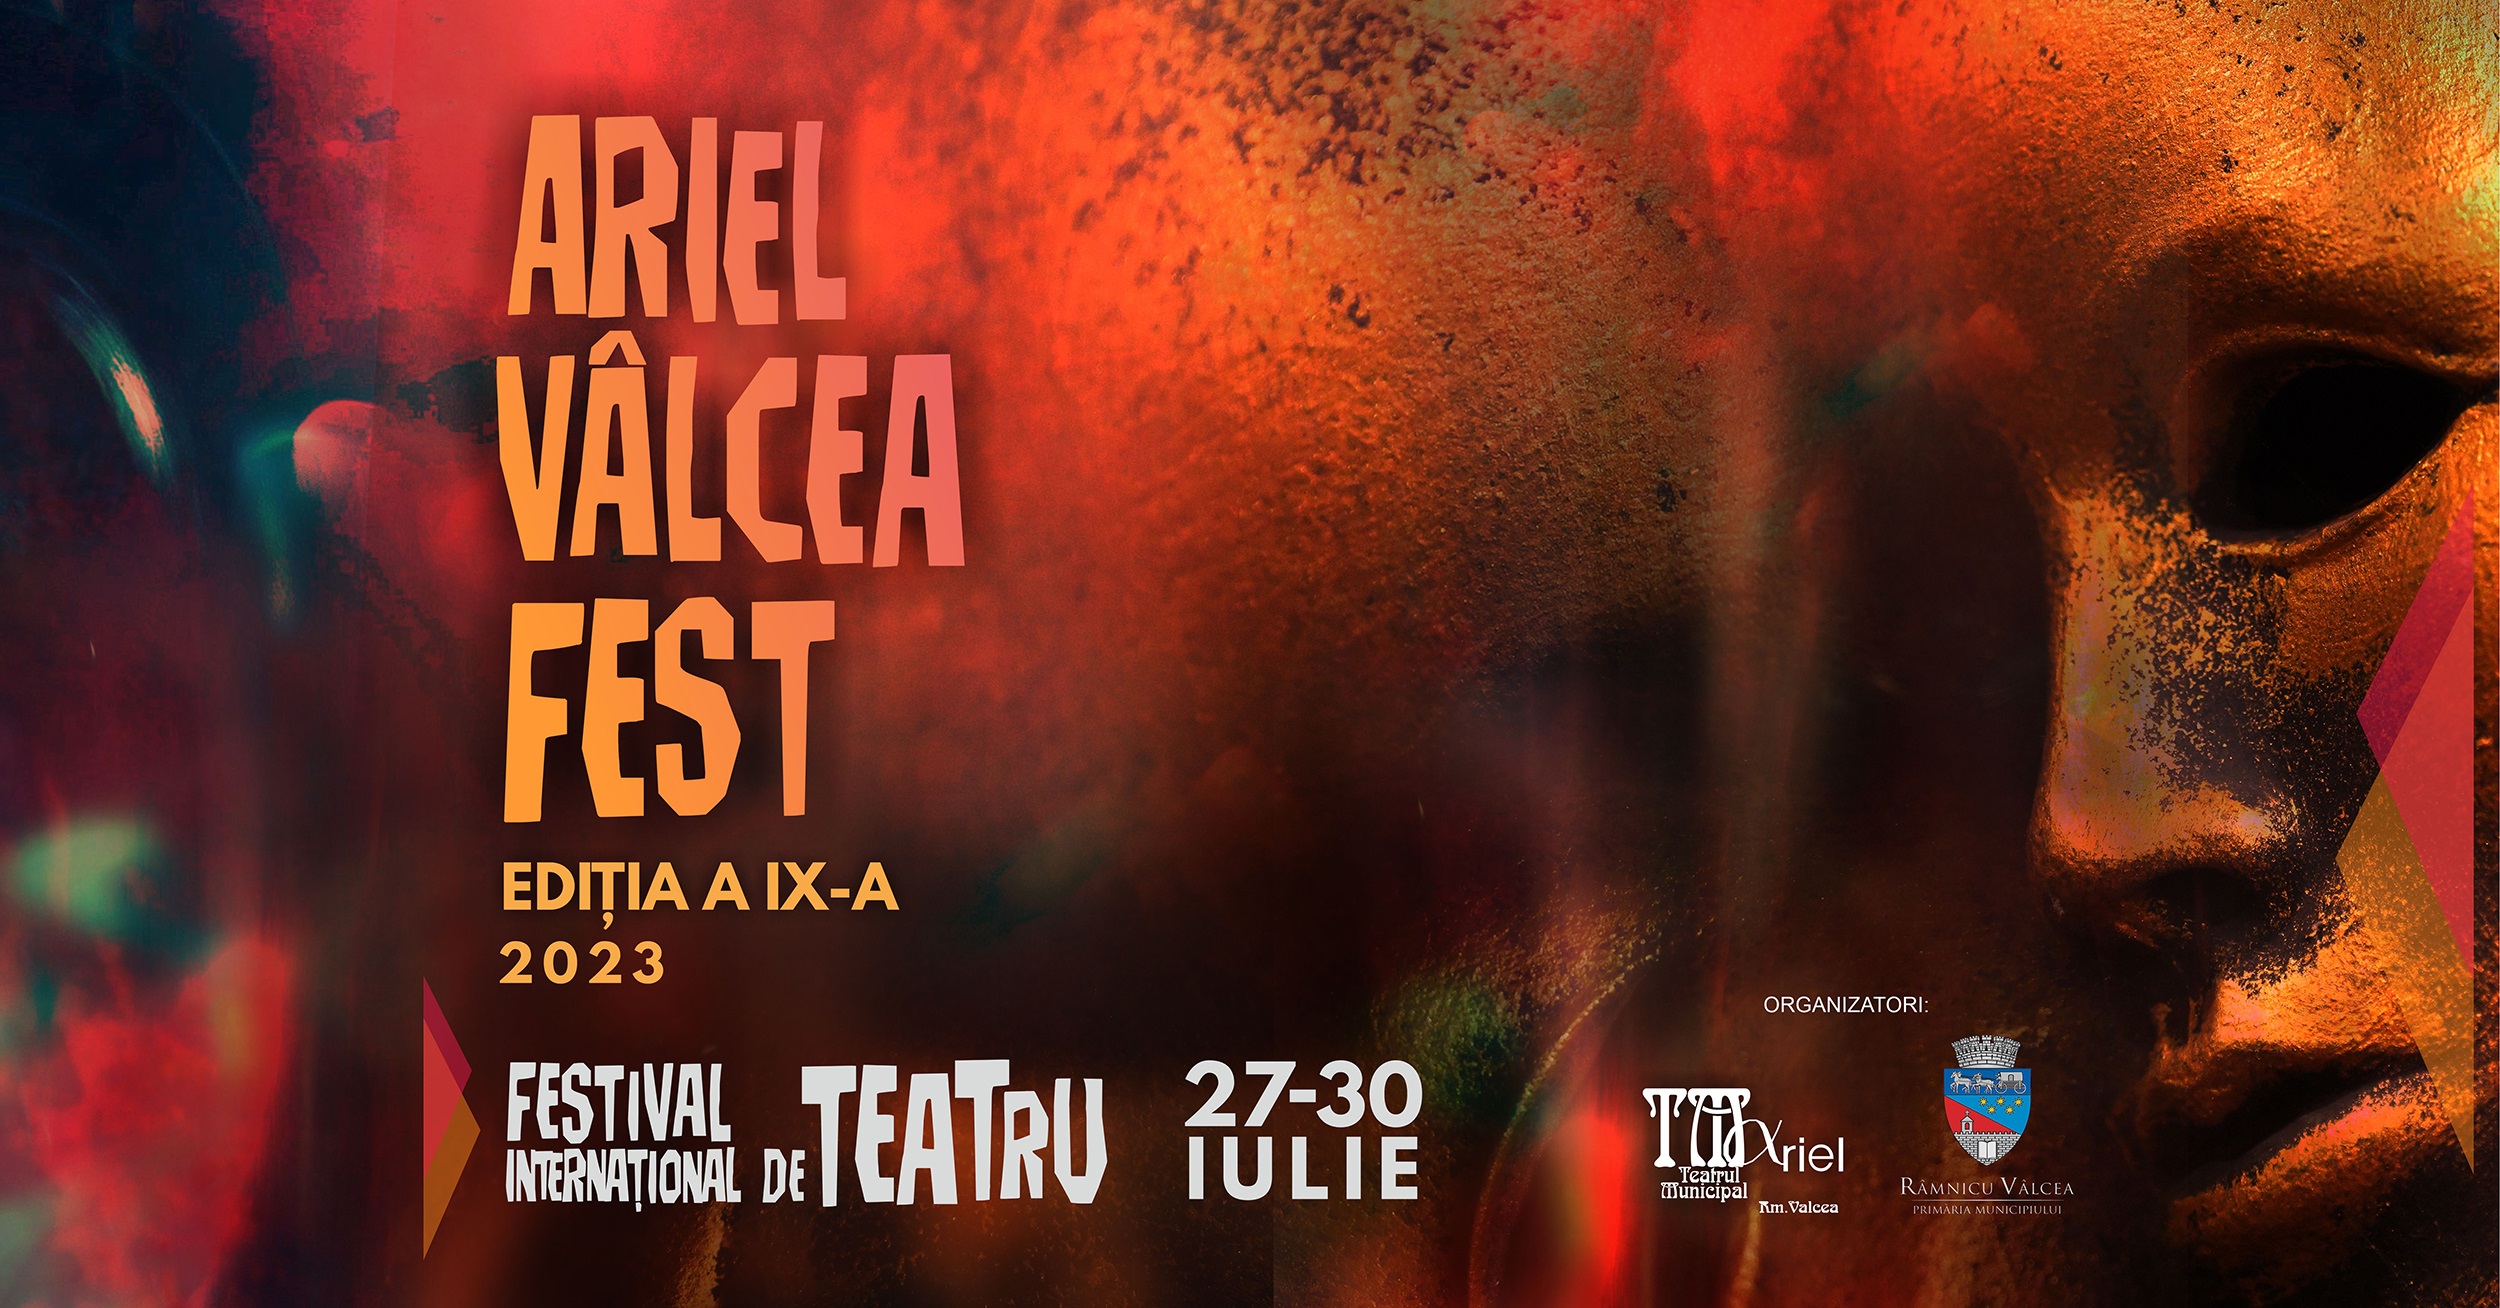 Festivalul Internaţional de Teatru Ariel Vâlcea Fest, din 27 iulie